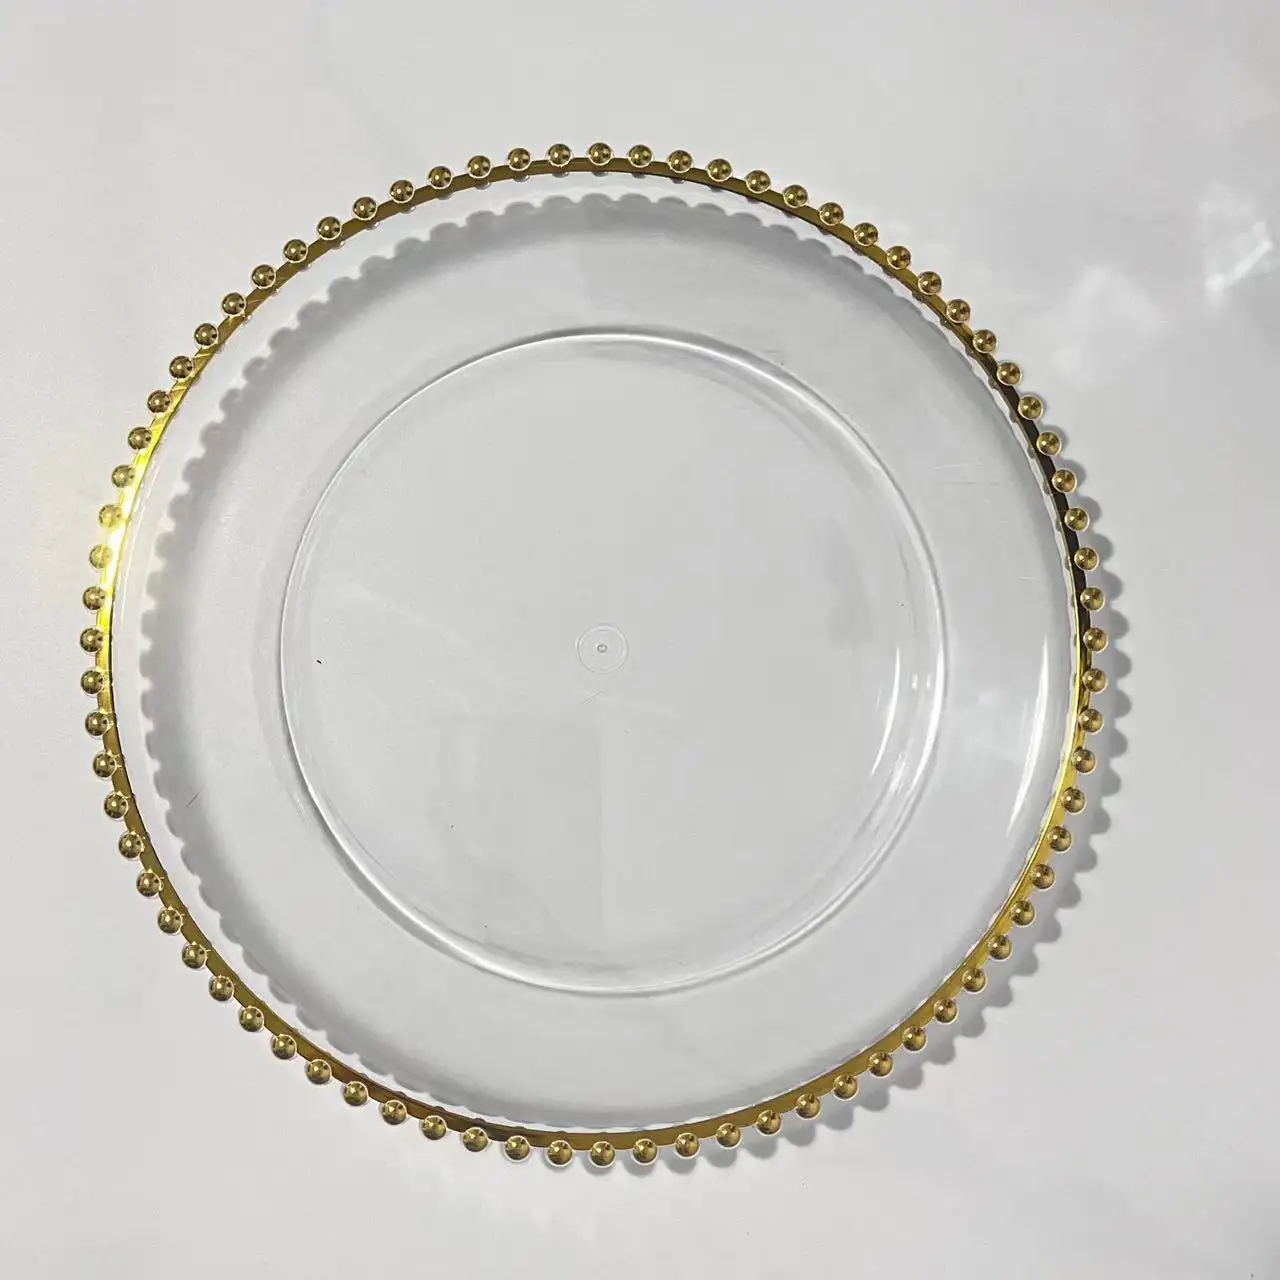 แผ่นที่ชาร์จแก้วอะคริลิคประดับโต๊ะสีเงินสีทองใสขนาด13นิ้วแผ่นพลาสติกตกแต่งสำหรับงานเลี้ยงงานแต่งงาน